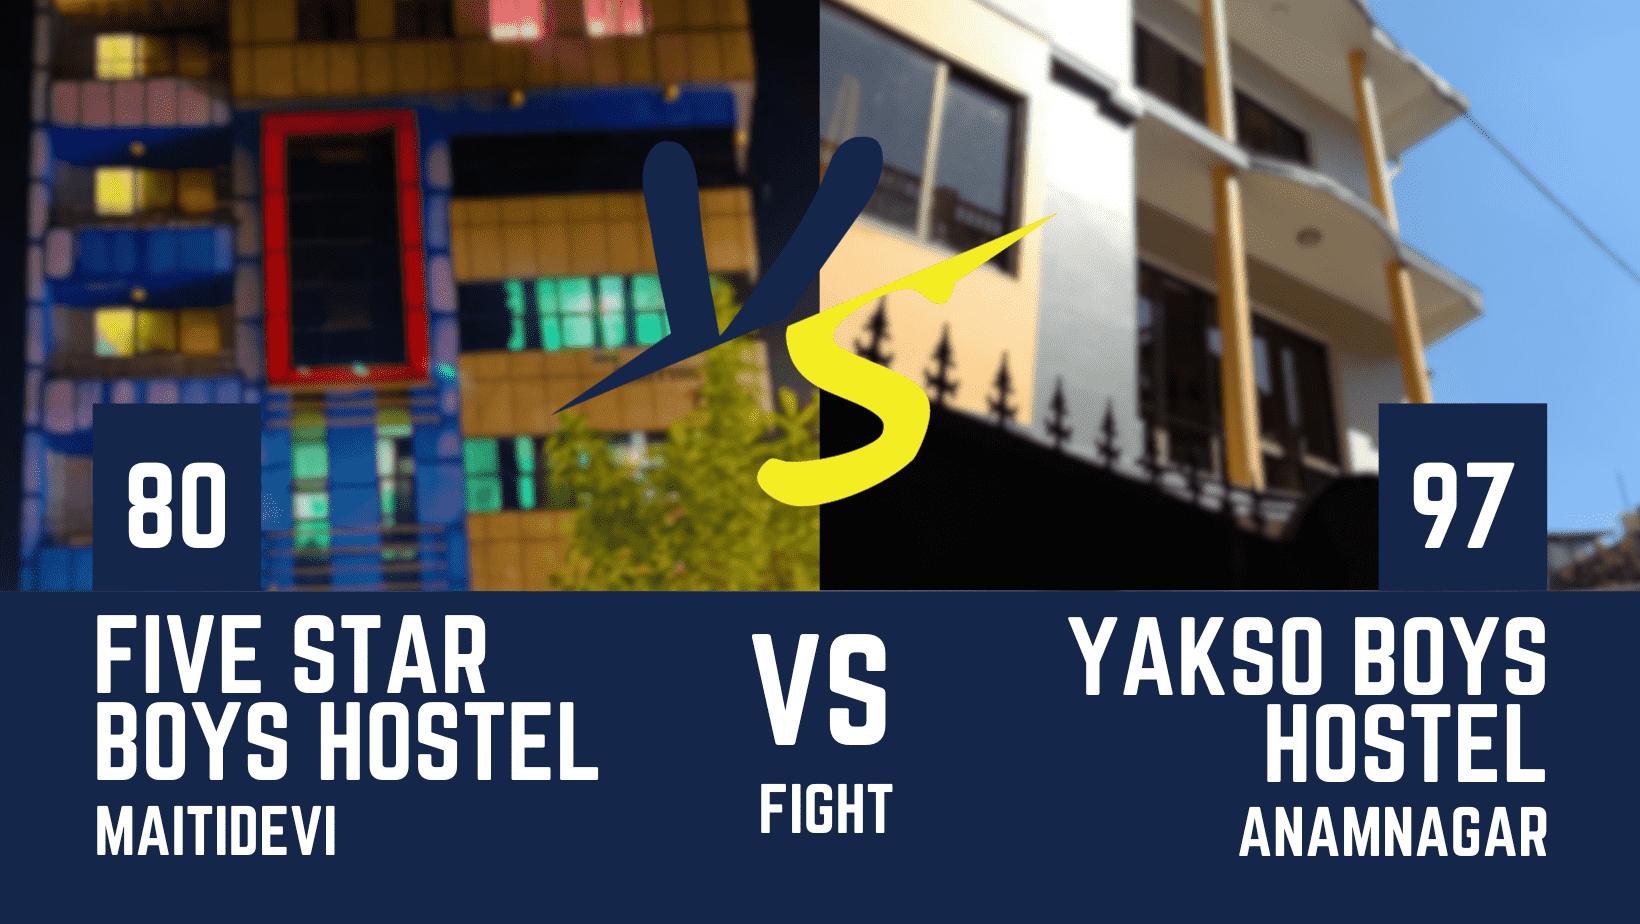 Comparison Between Top 2 Hostels: Yakso Boys Hostel vs Five Star Boys Hostel